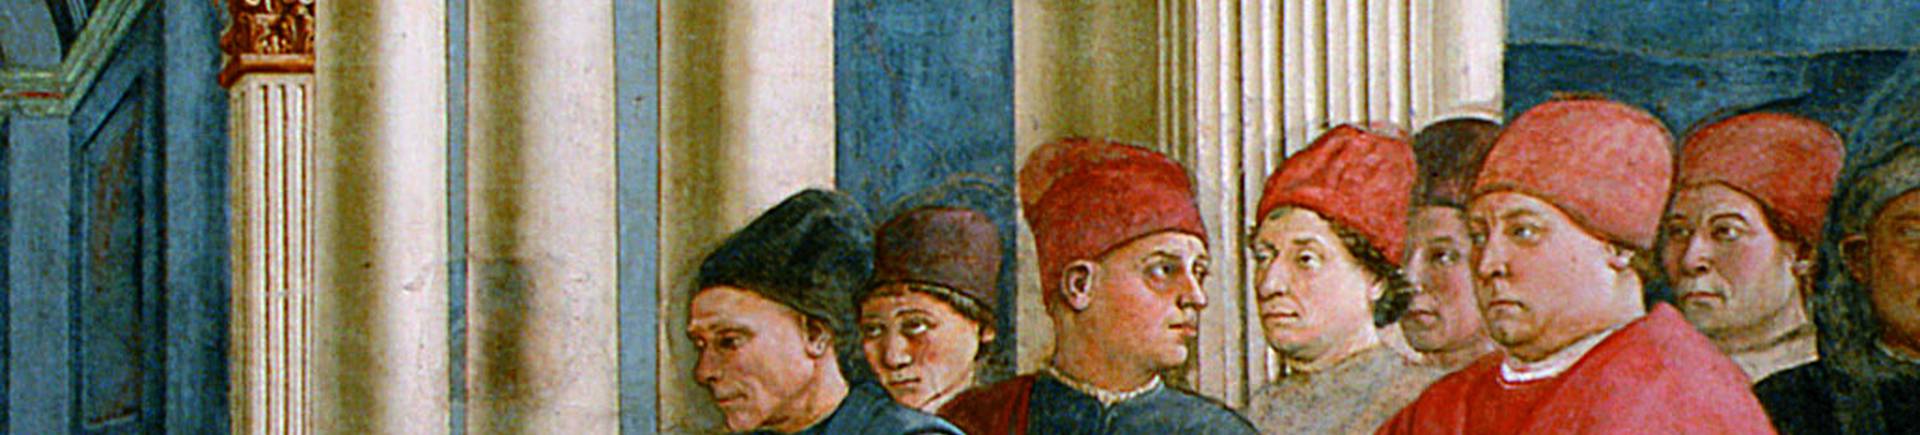 Particolare del gruppo di destra delle Esequie di santo Stefano, con il Papa Pio II, in abiti rossi, dietro di lui il preposto Carlo II de' Medici, affiancato da due frati, probabilmente il più anziano è lo stesso Lippi, mentre l'altro Fra Diamante. 